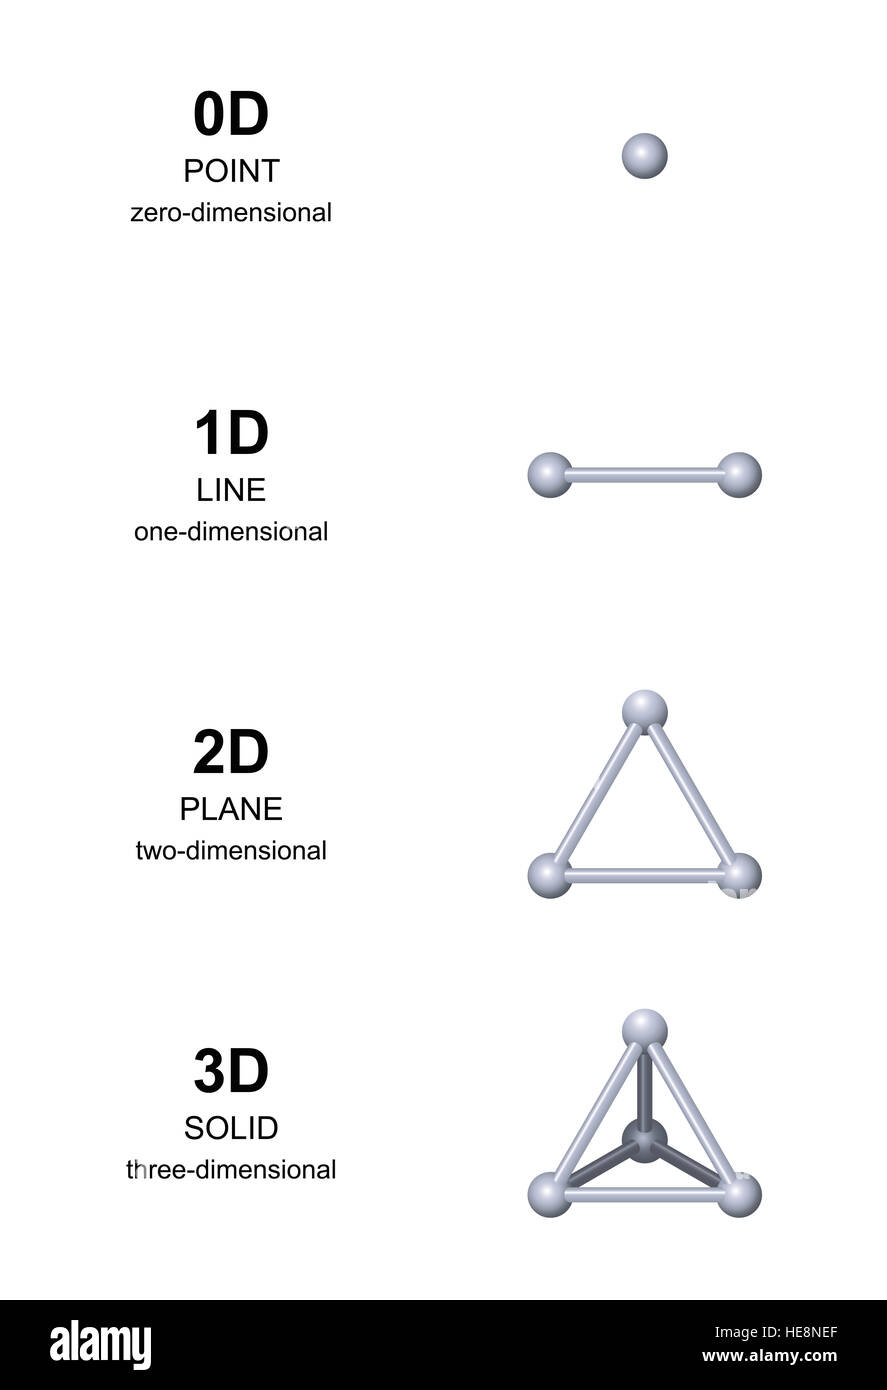 Développement 3D avec des sphères gris. Dimension de zéro à trois dimensions. Point, ligne, plan et solide, ou d'un triangle équilatéral Banque D'Images